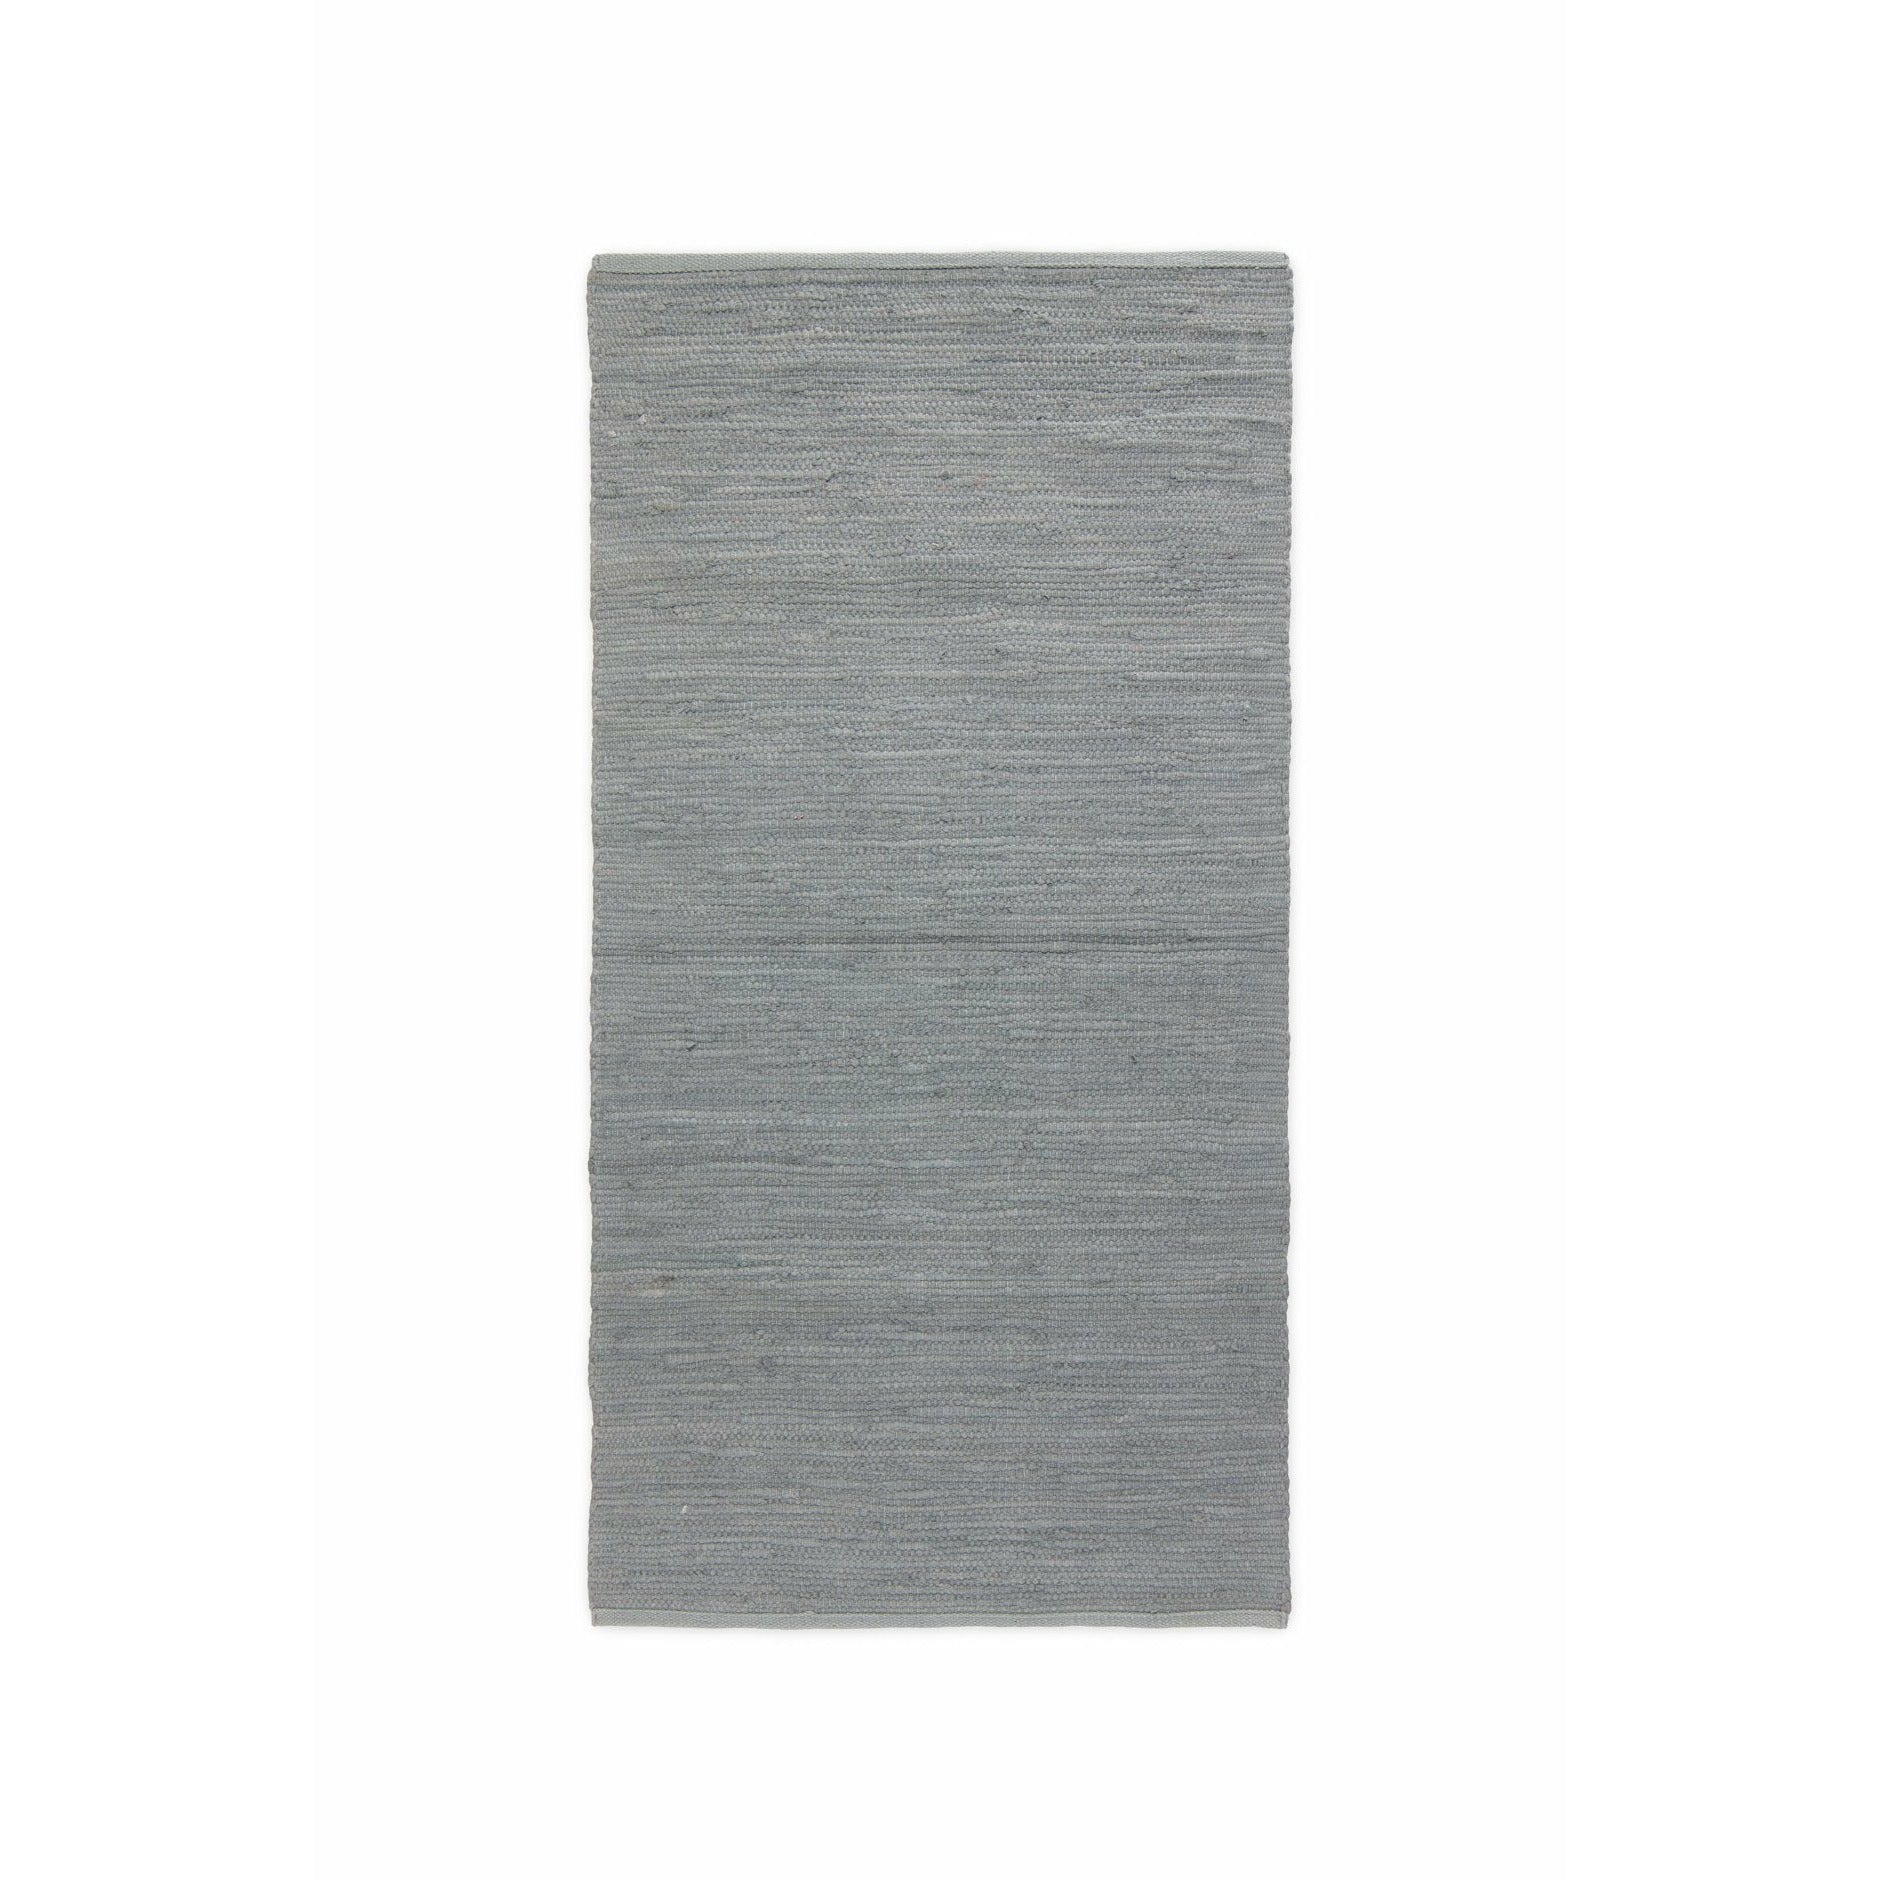 Tappeto di cotone solido grigio chiaro, 60 x 90 cm